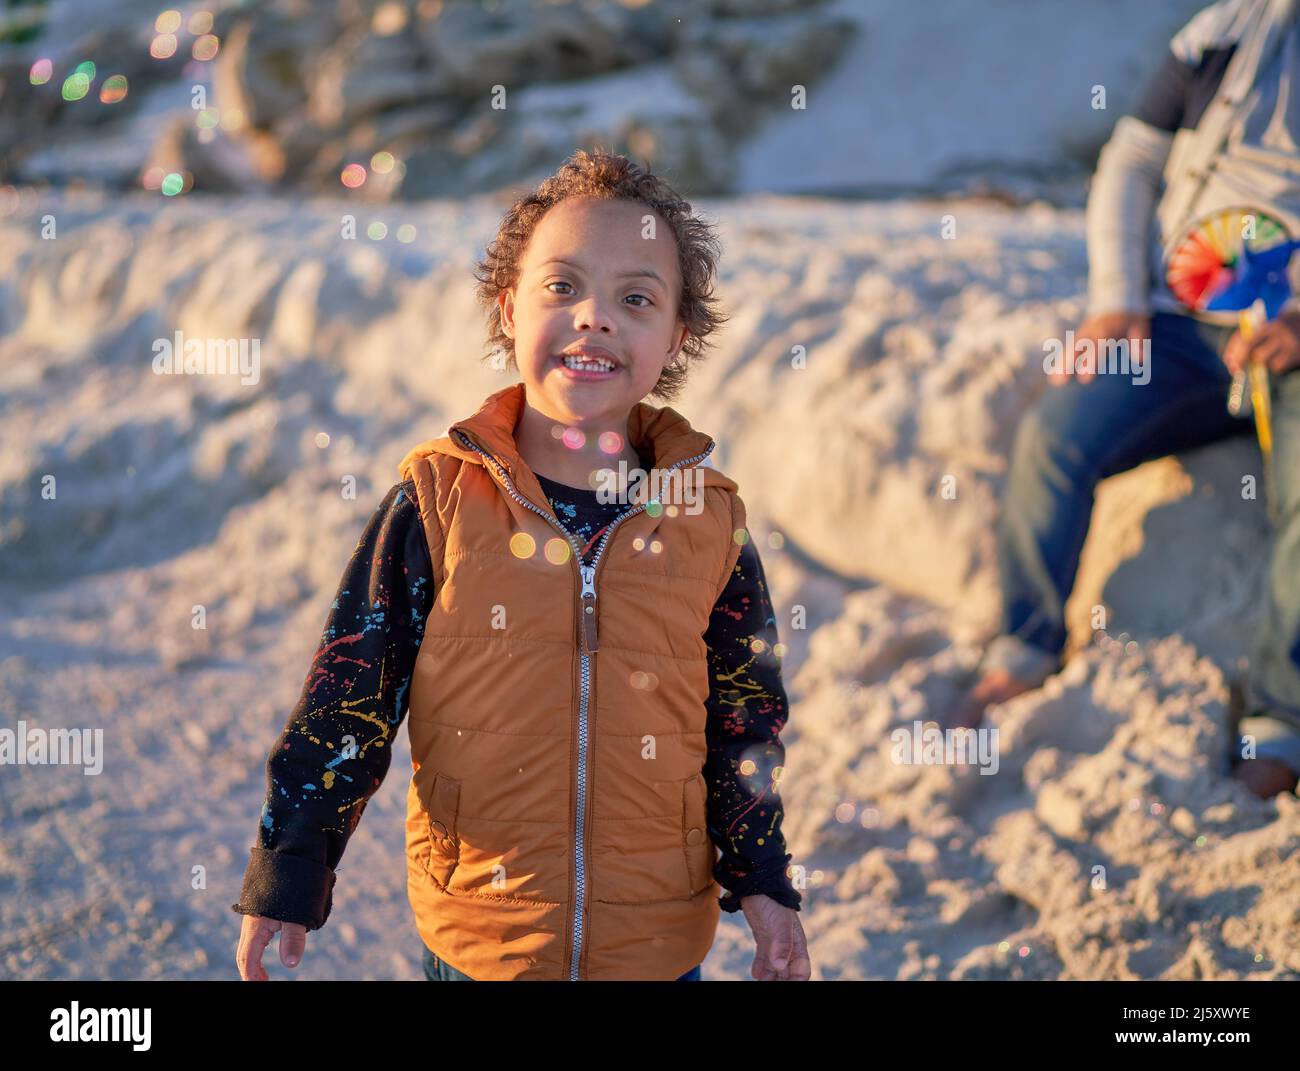 Portrait joli garçon avec le syndrome de Down observant des bulles sur la plage Banque D'Images